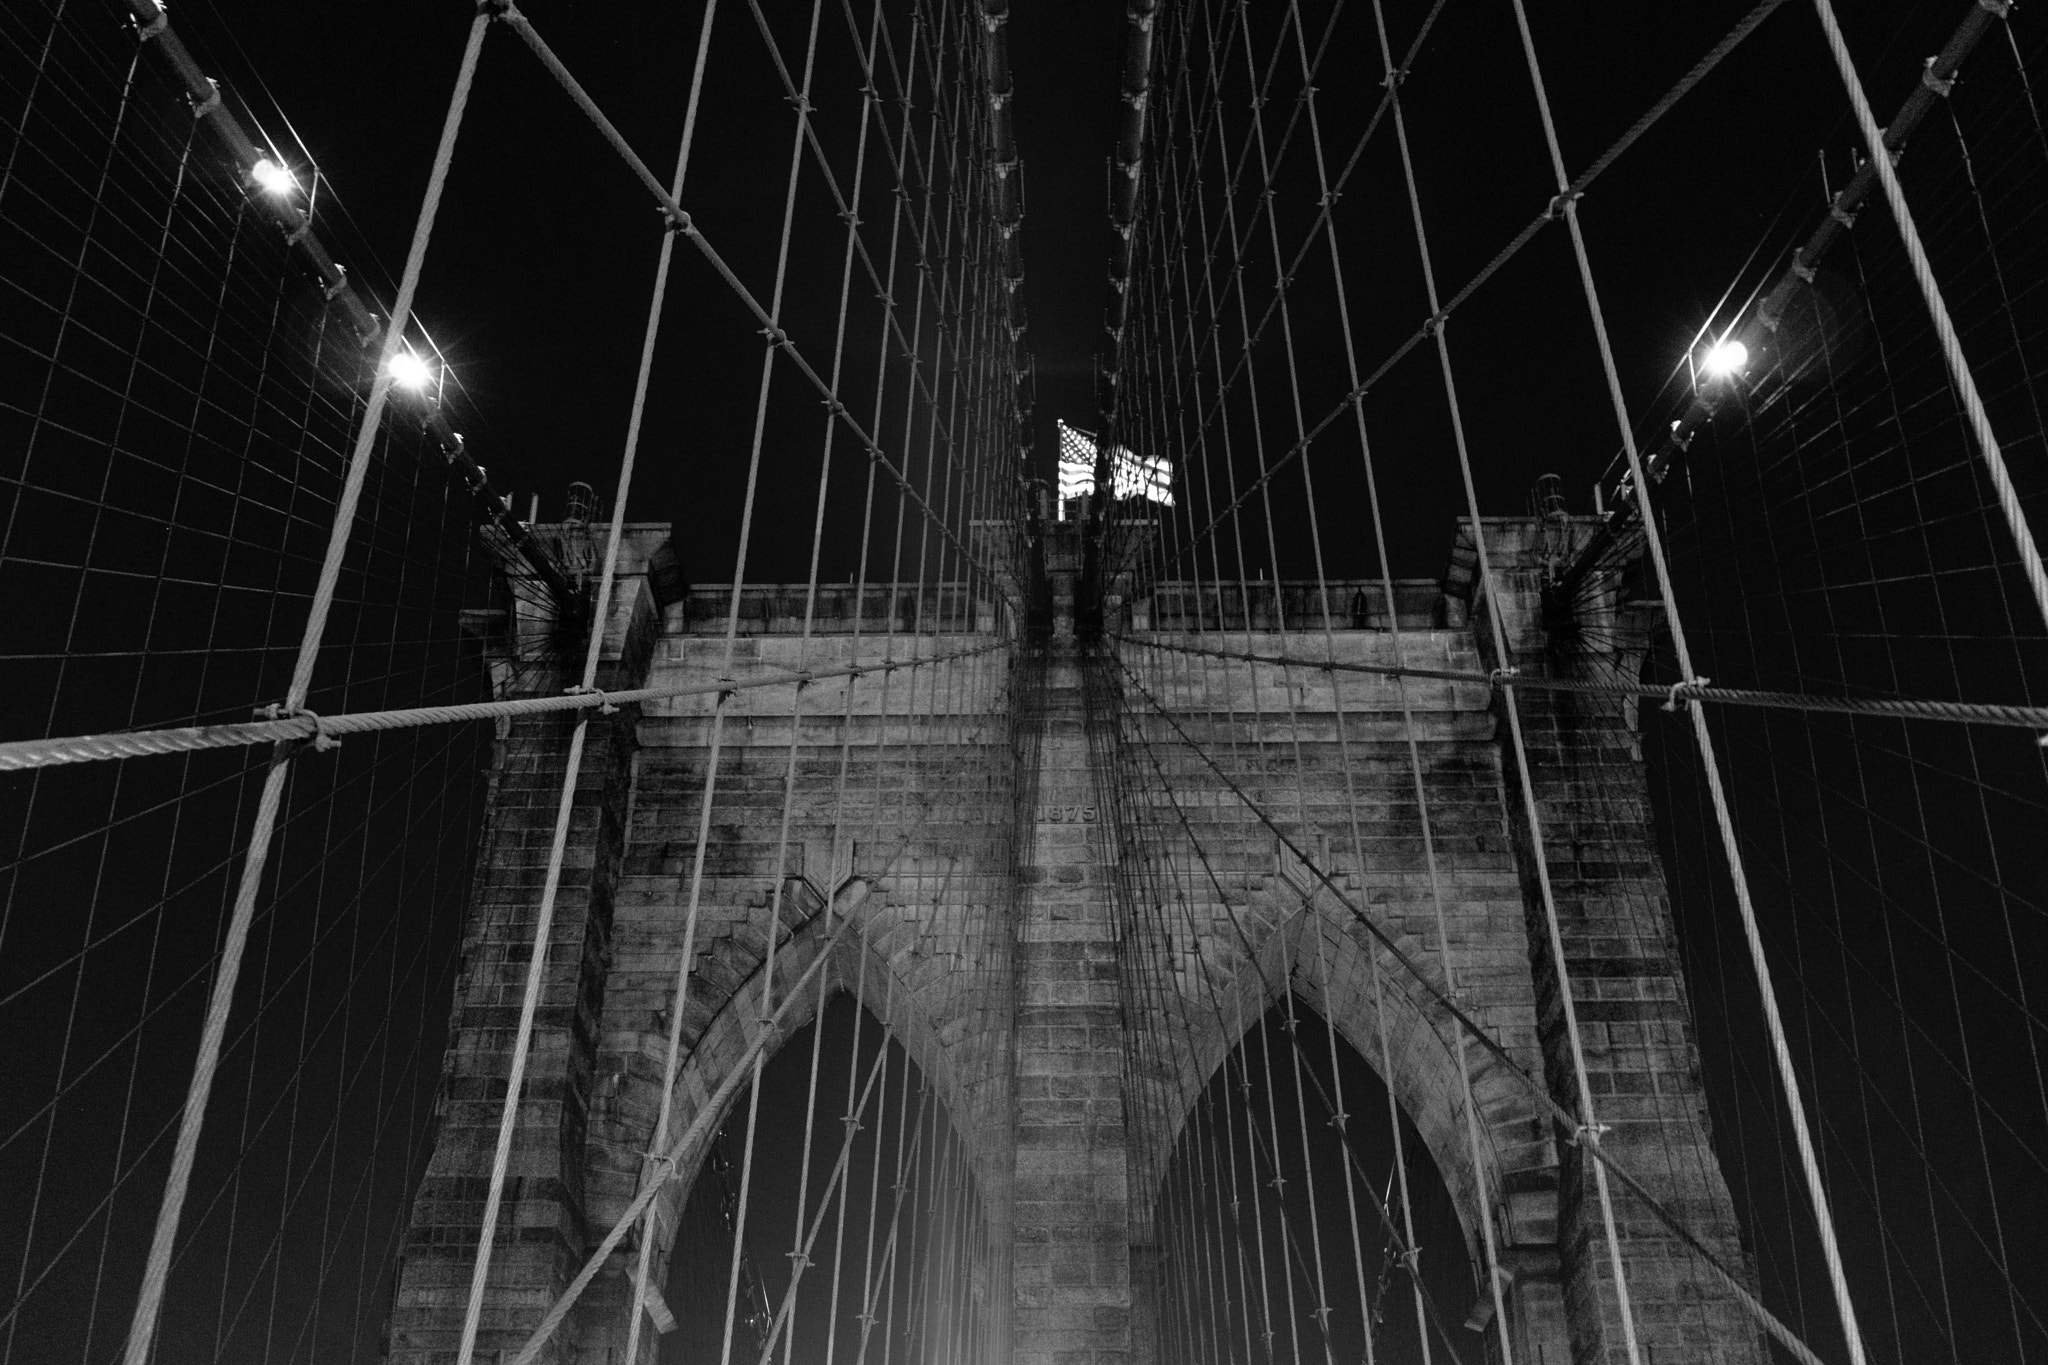 Sony a6000 + Sony FE 24-240mm F3.5-6.3 OSS sample photo. Brooklyn bridge at night photography